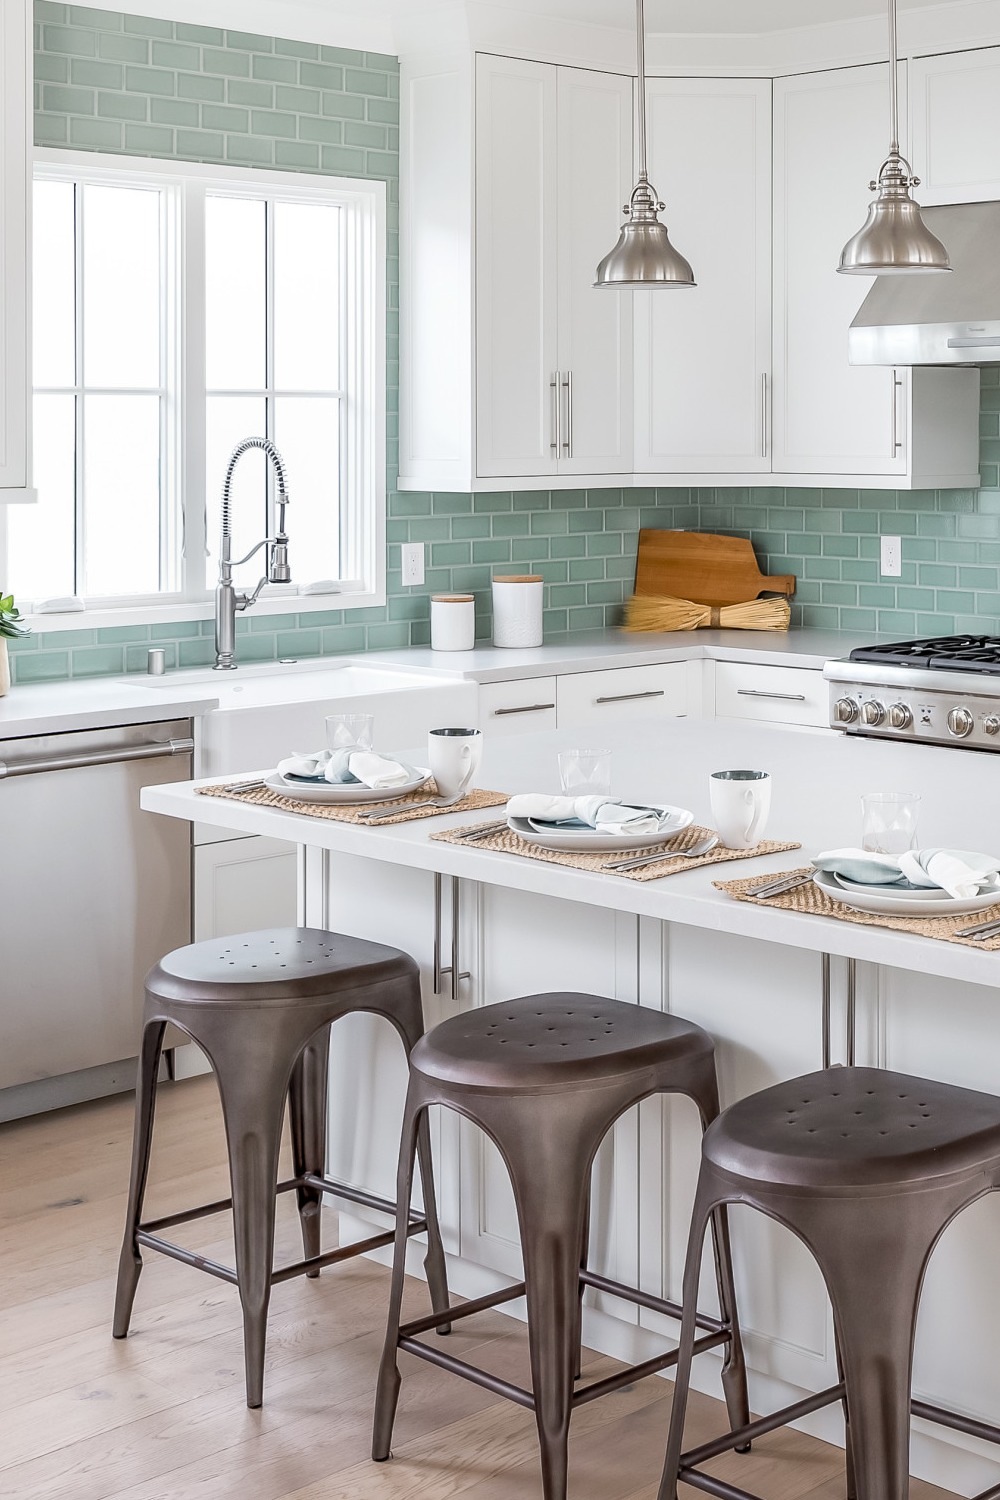 White Kitchen Stainless Steel Appliances Kitchen Cabinet With Dark Green Tile Backsplash Wood Floor